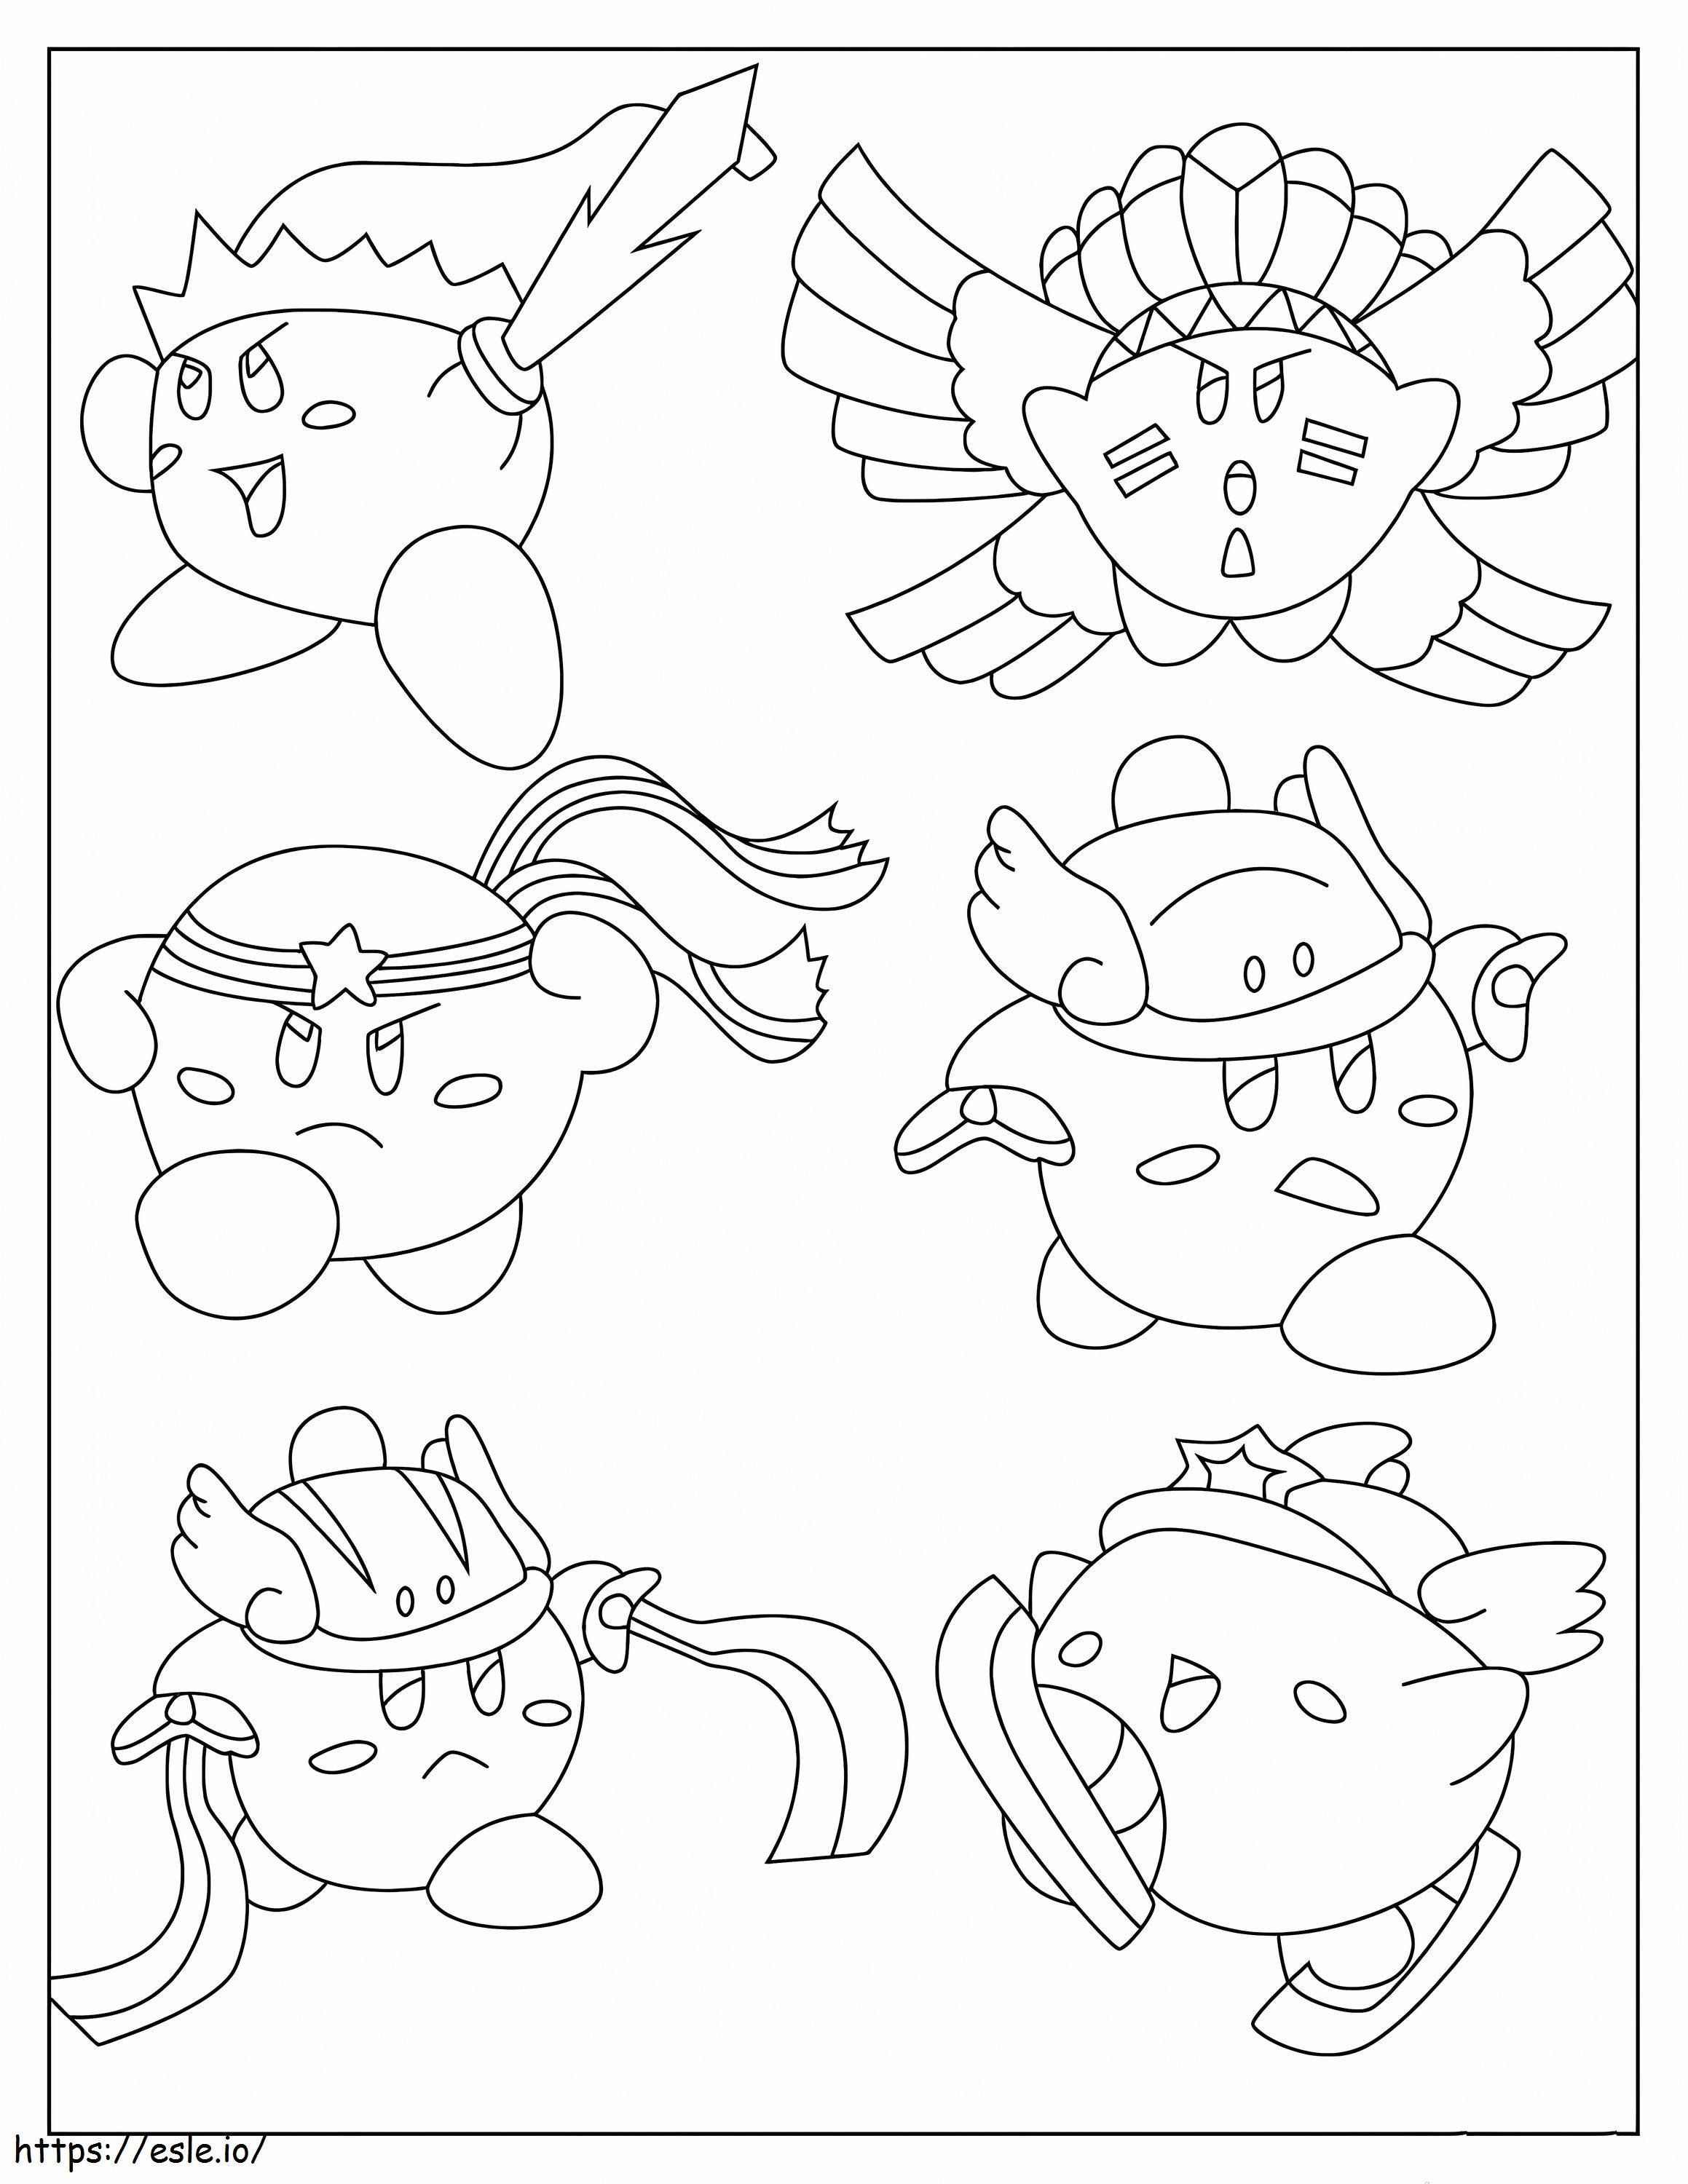 Seis skins de Kirby para colorir